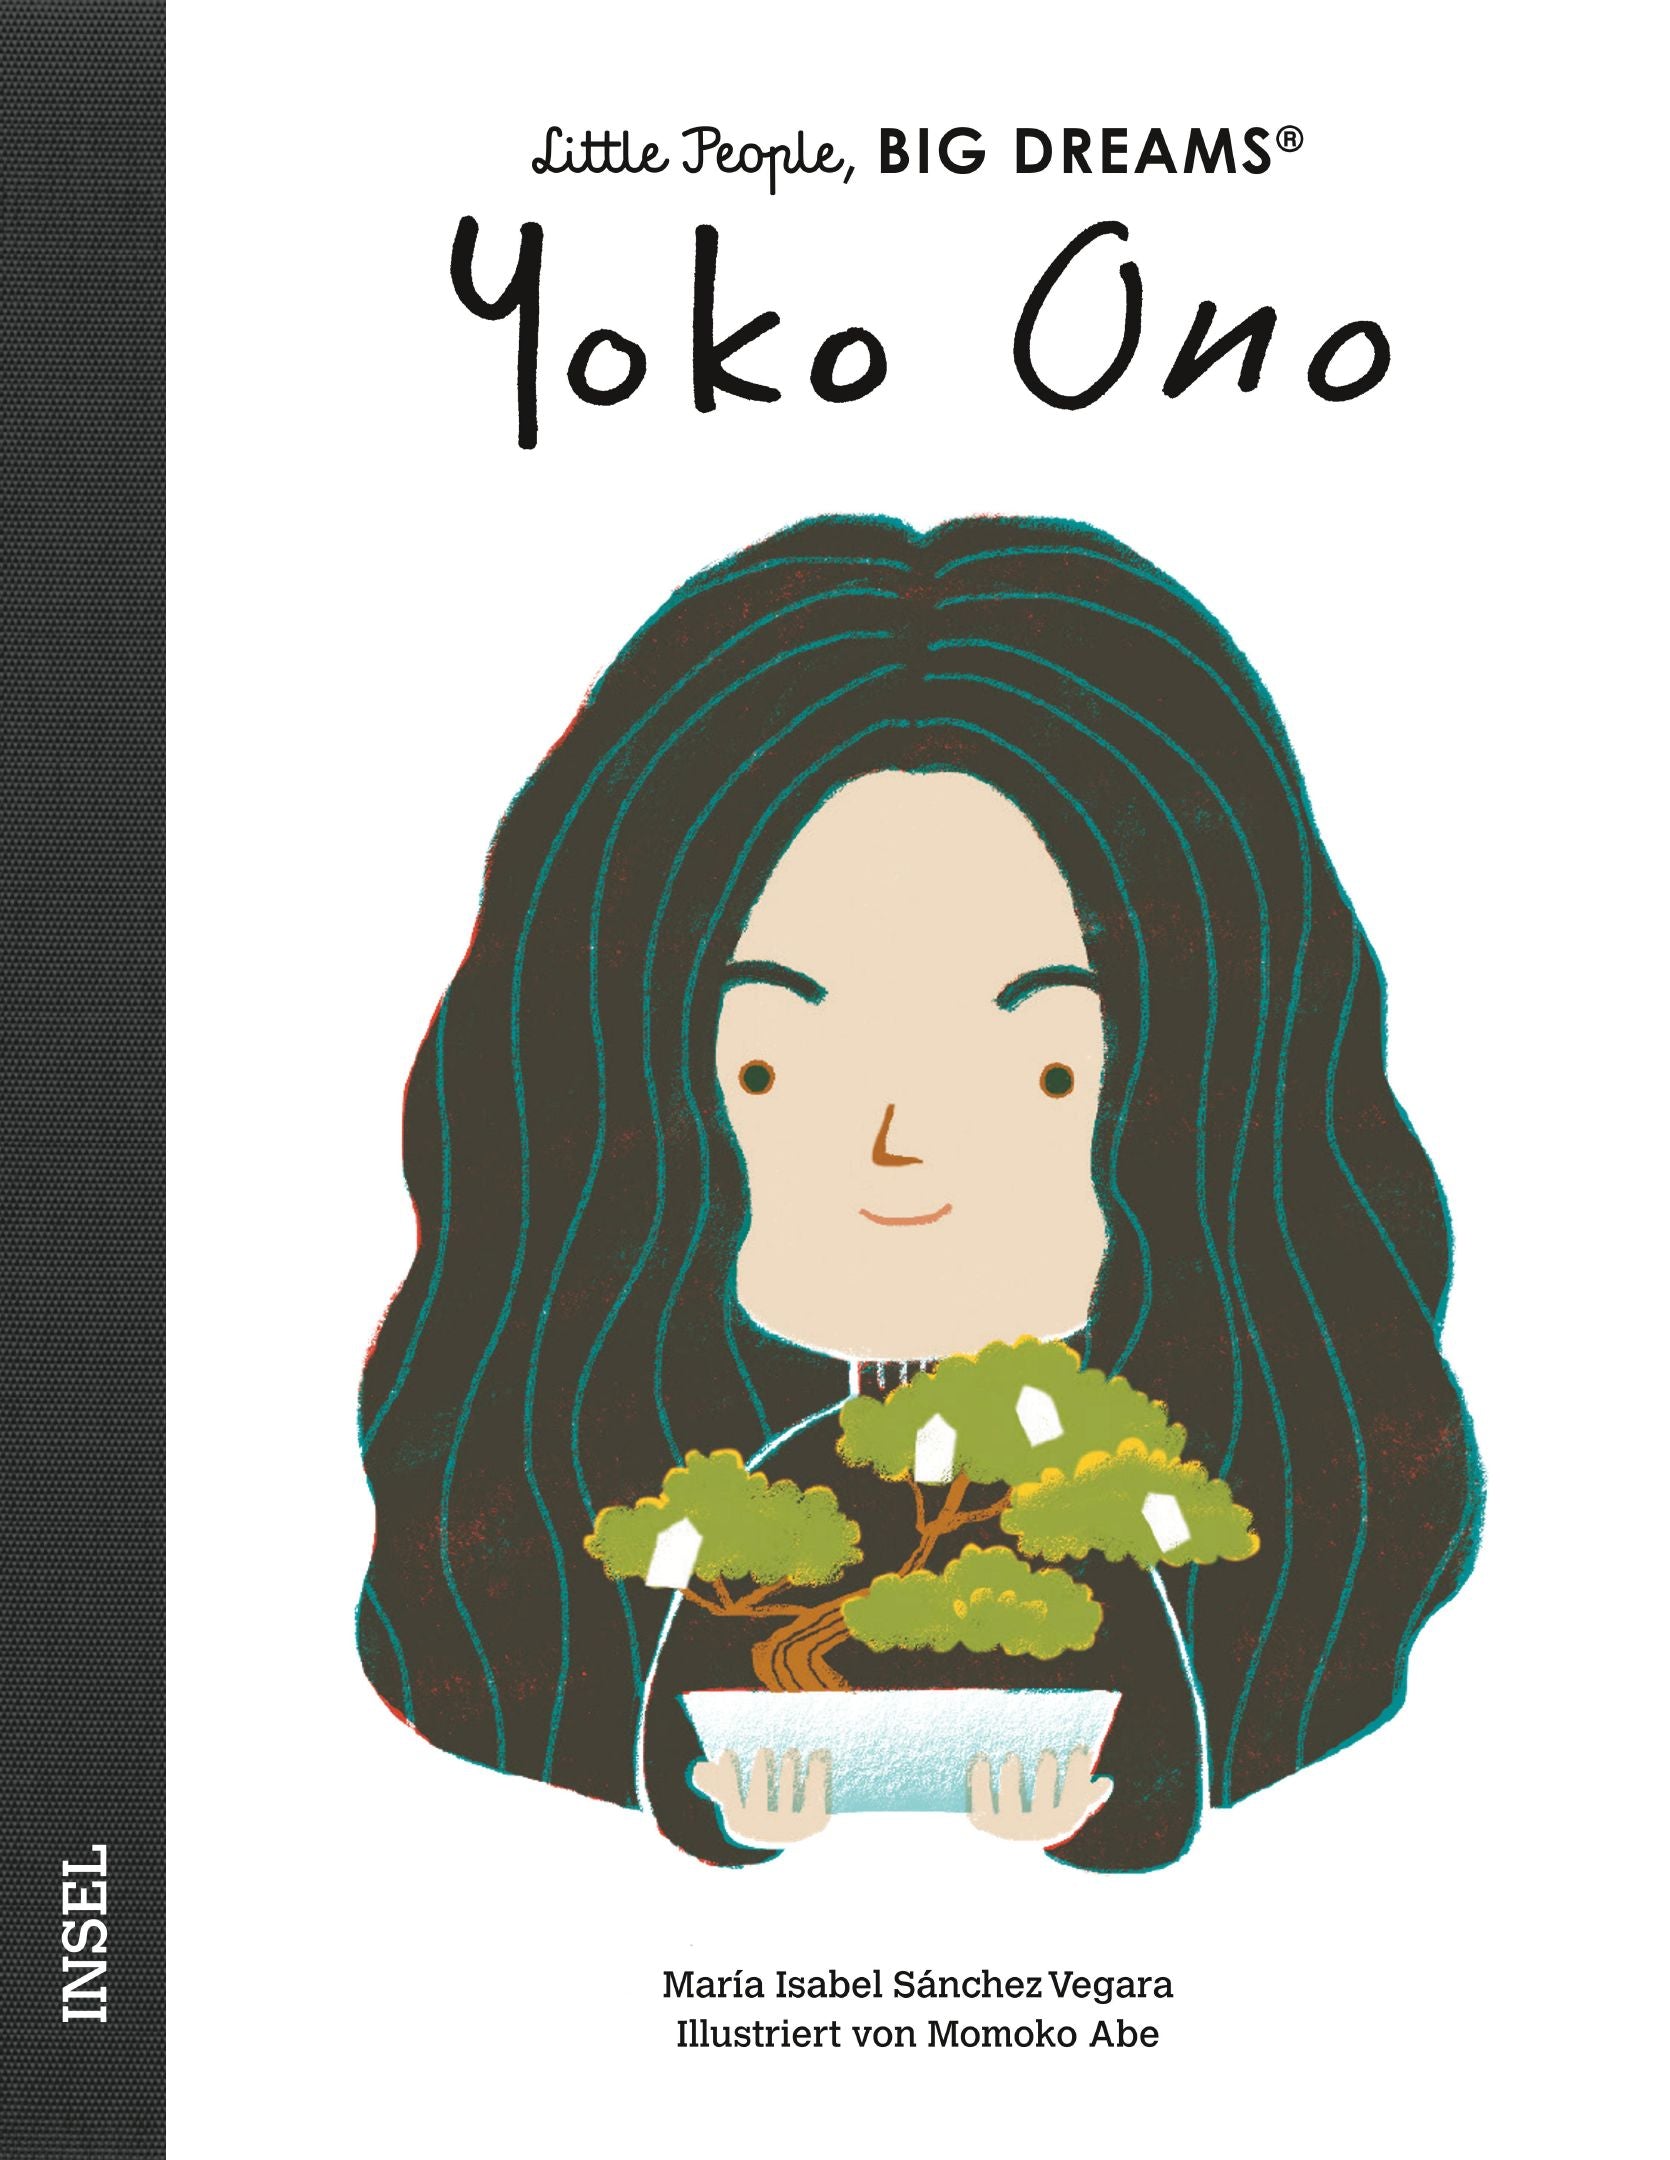 Little People - Yoko Ono